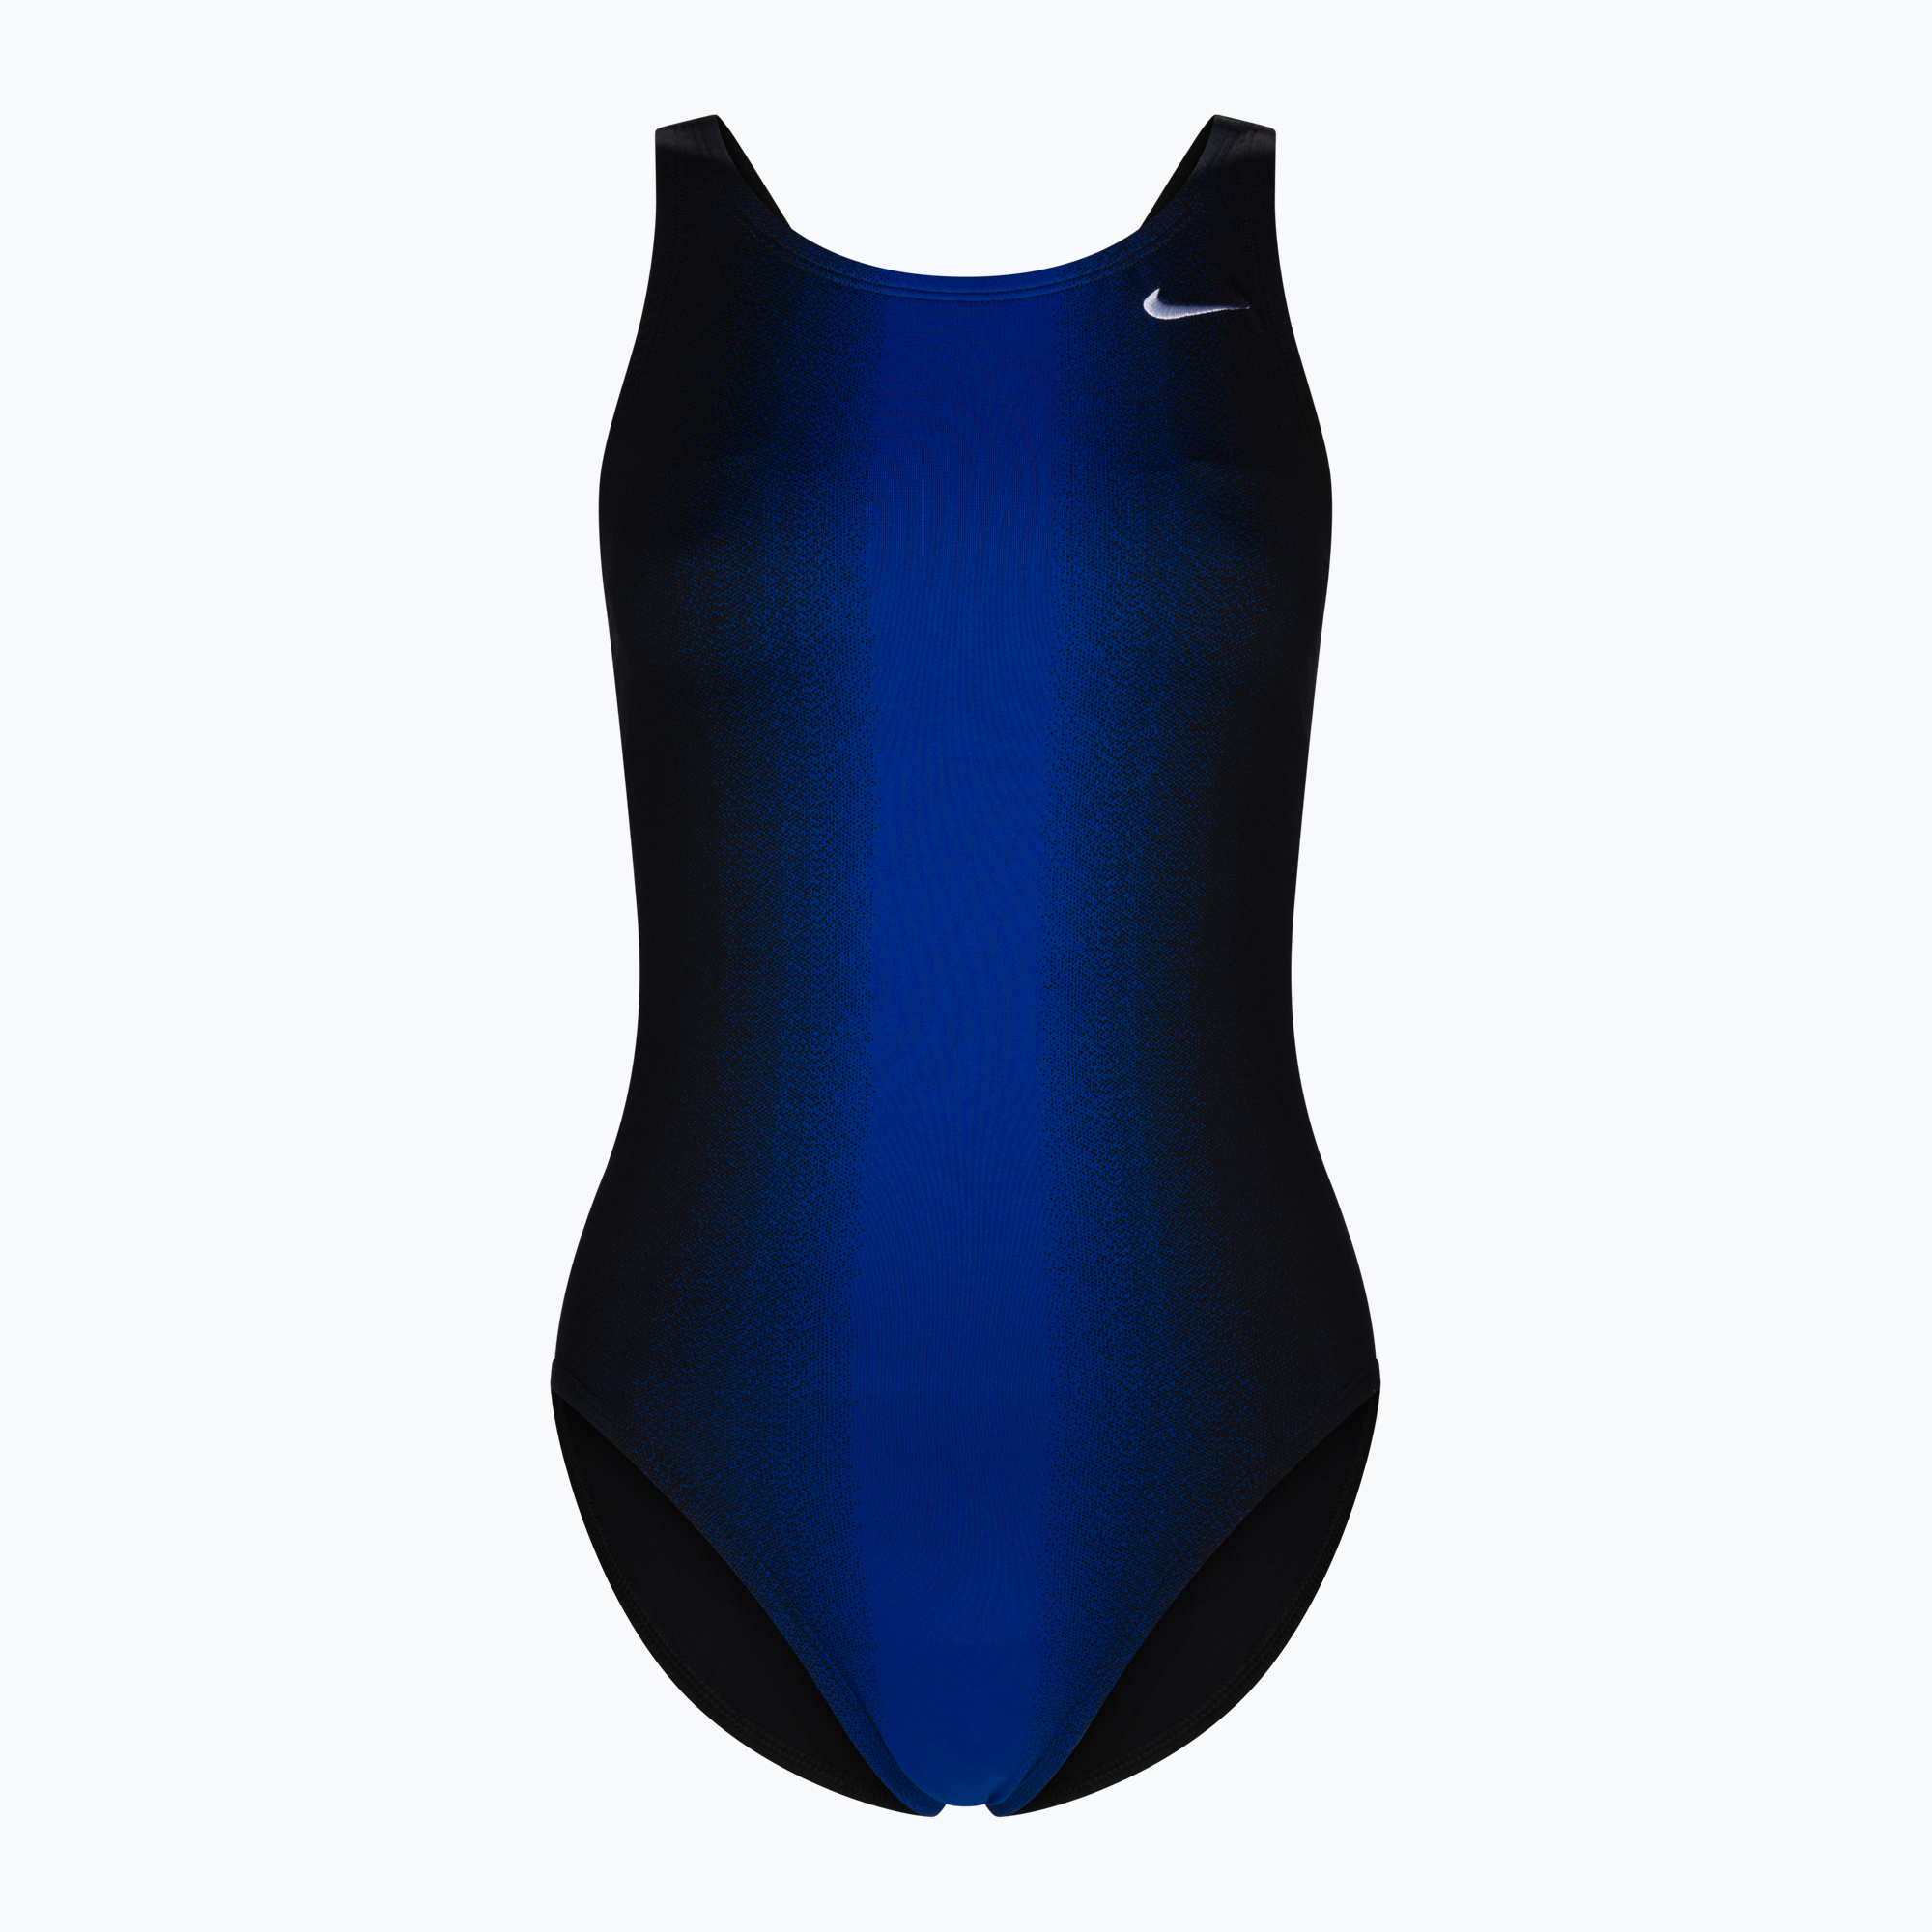 Дамски бански костюм от една част Nike Fade Sting черен и тъмносин NESS8050